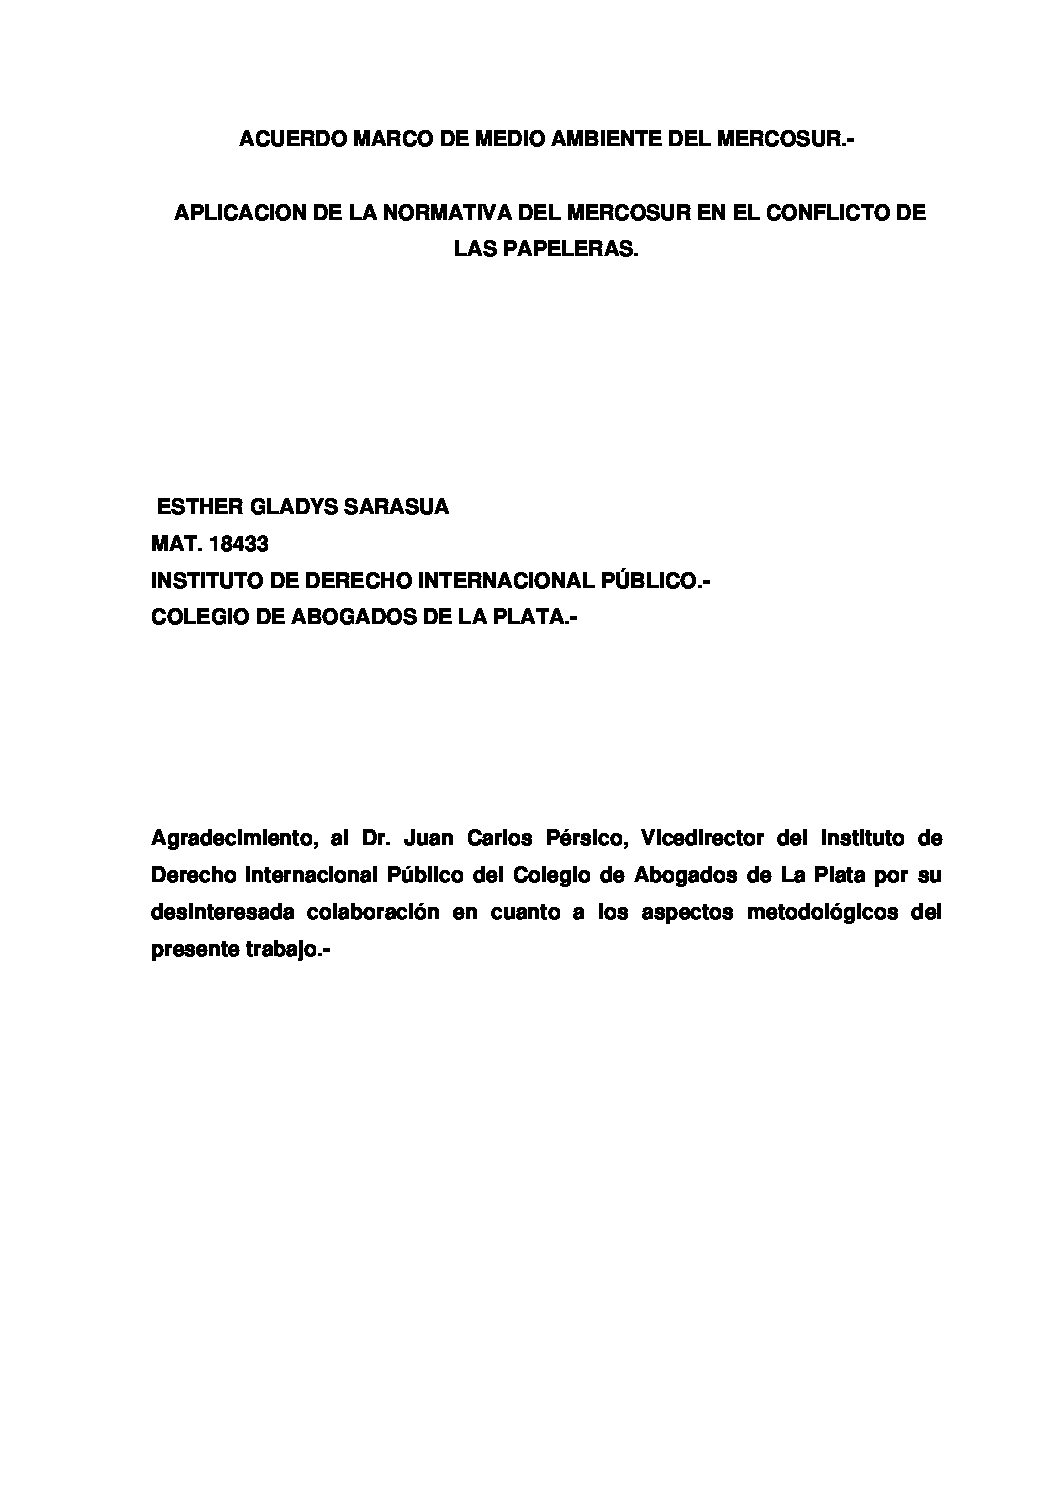 Acuerdo marco de medio ambiente del Mercosur. - Aplicación de la normativa del Mercosur en el conflicto de las papeleras.